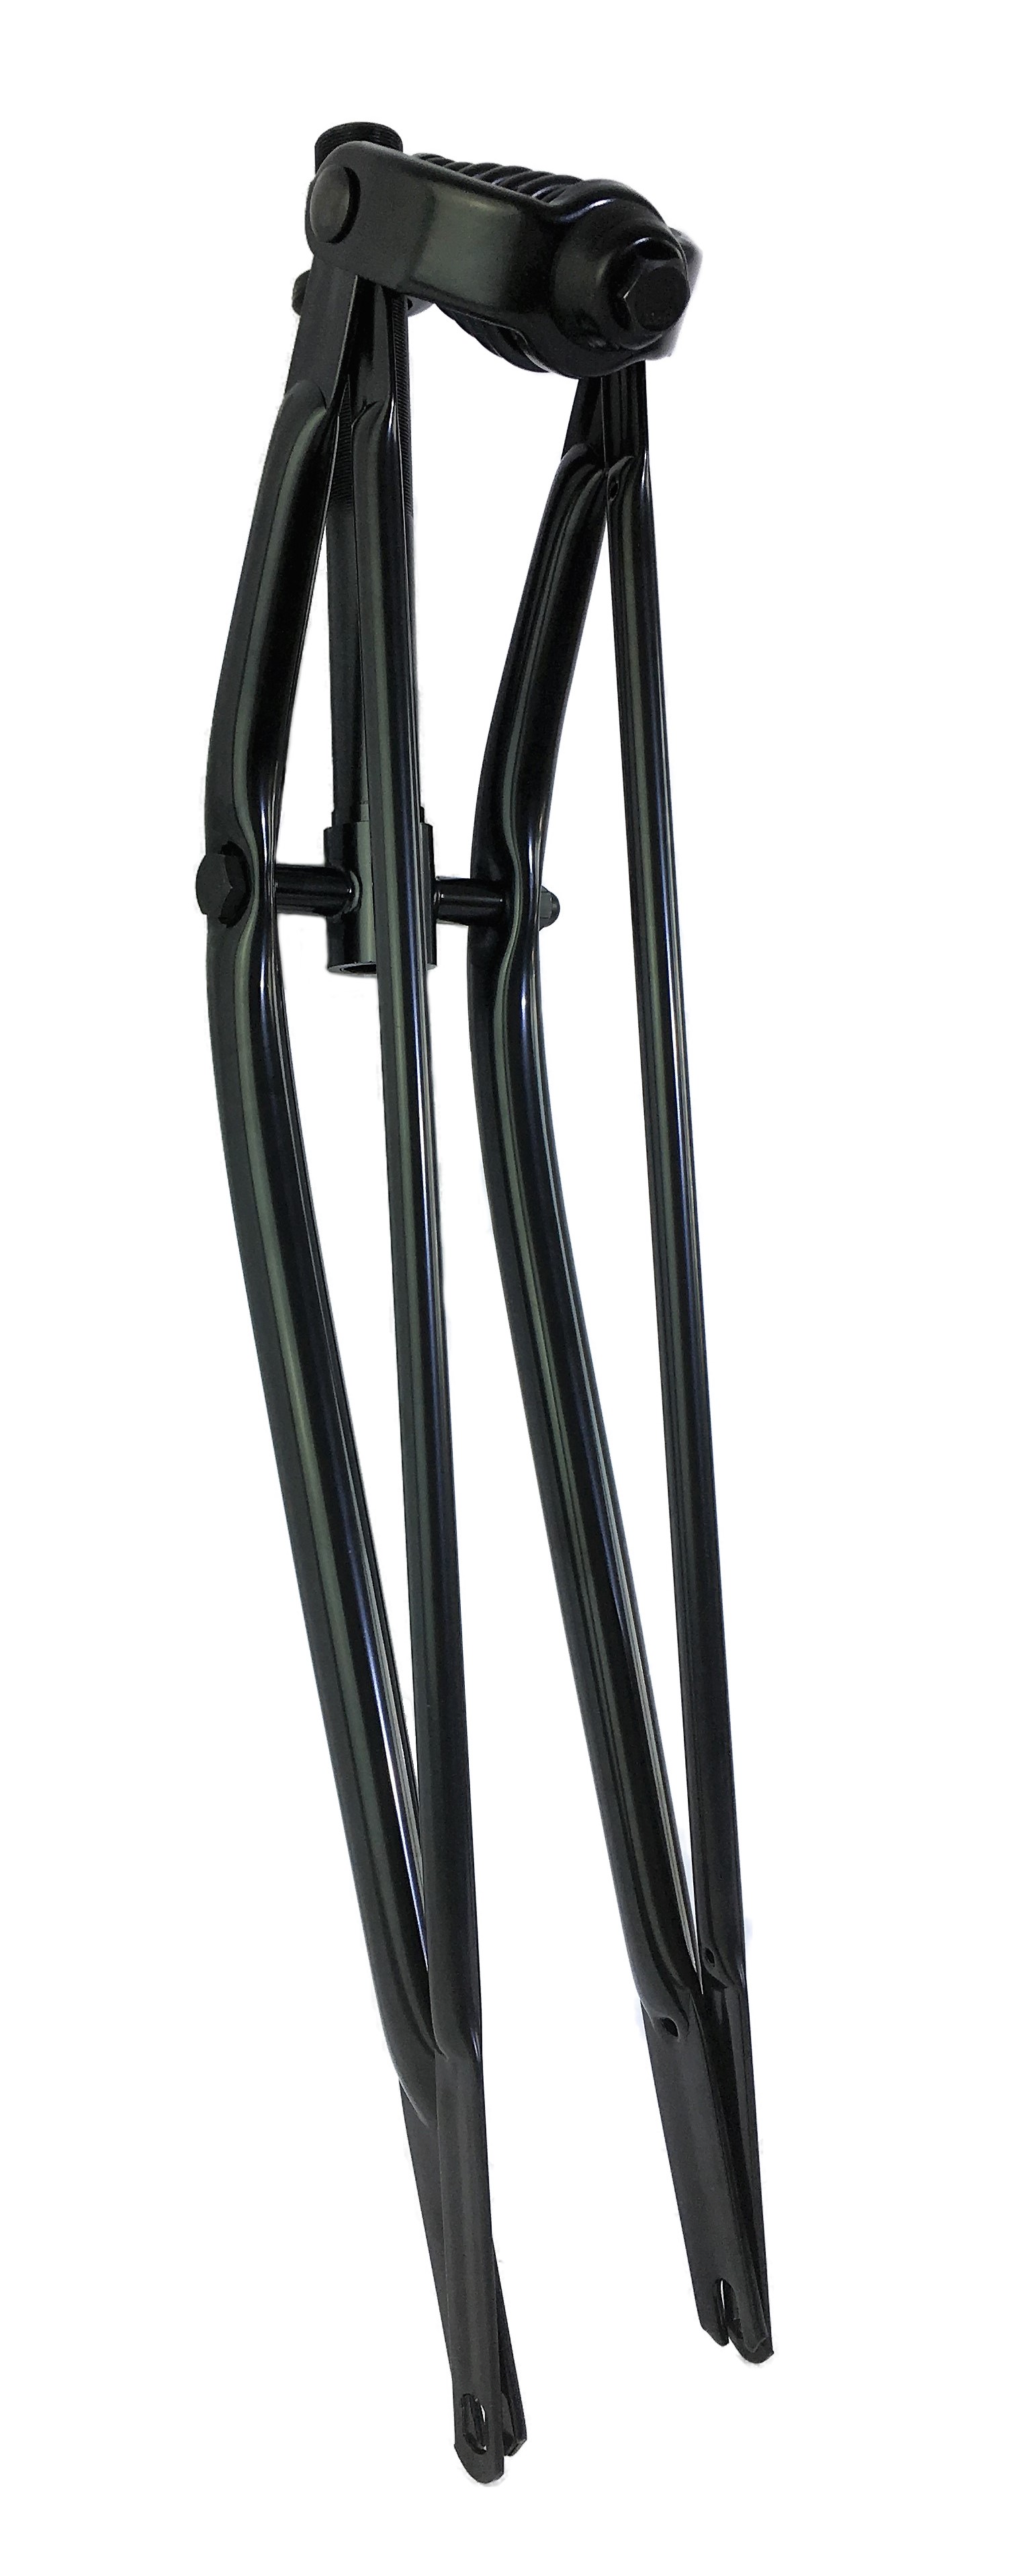 Springer Fork 26 inch without Cantilevers, black, 1 1/8 steerer